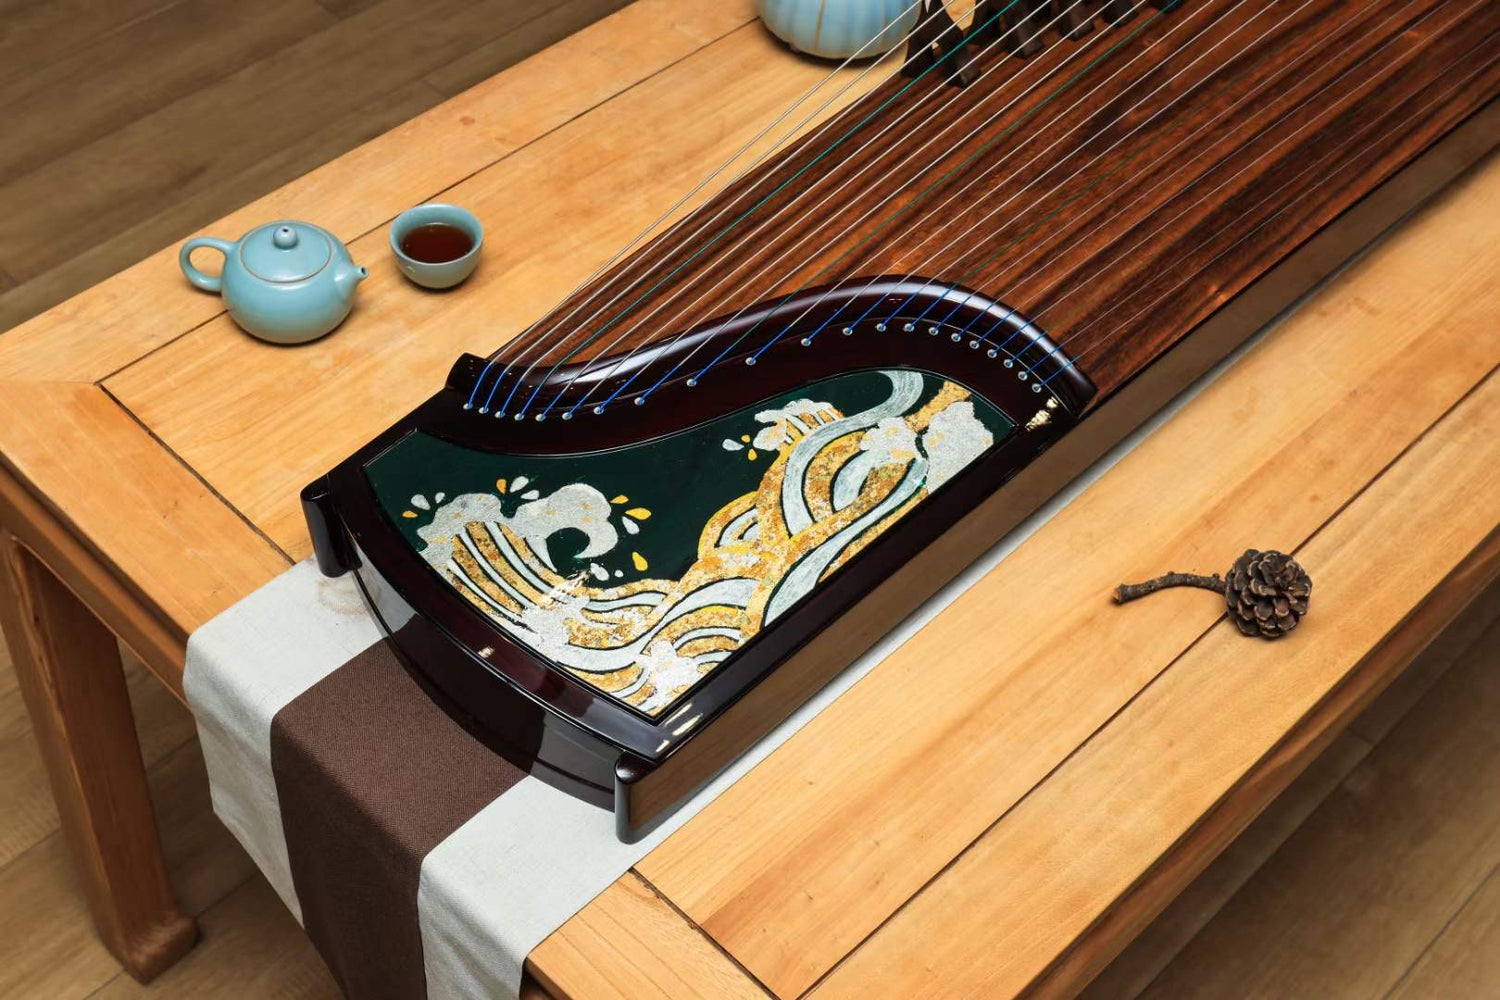 buy guzheng with quality, muyue guzheng, 163cm guzheng, 135cm guzheng, 100cm guzheng, quality guzheng, 海外买高性价比古筝